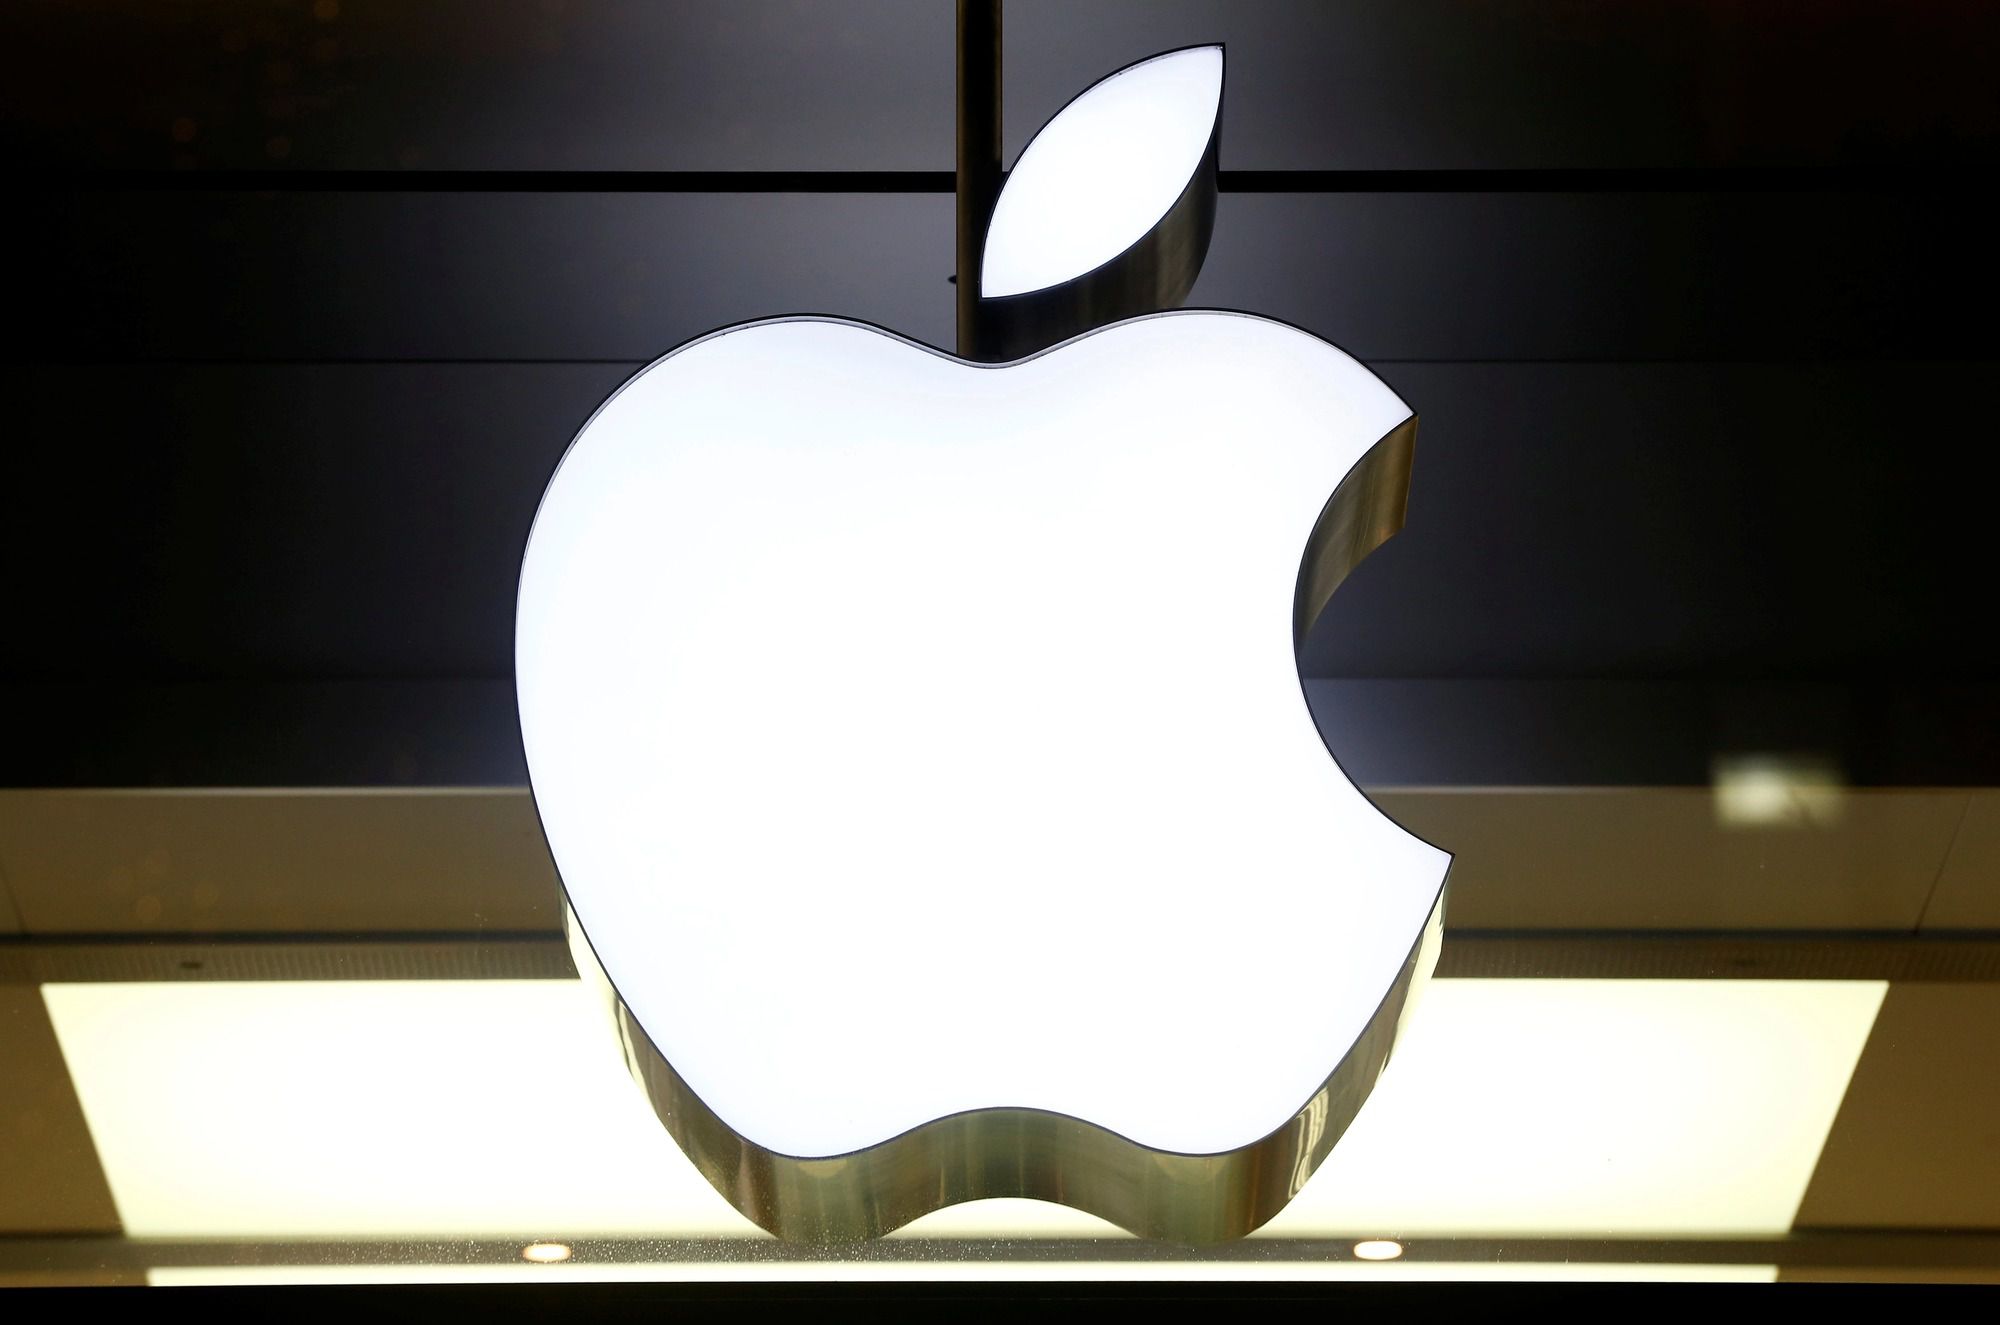 Корпорація Apple перевершила очікування експертів, зафіксувавши виручку в розмірі $ 62,9 млрд. Про це свідчить опублікований щоквартальний звіт компанії.